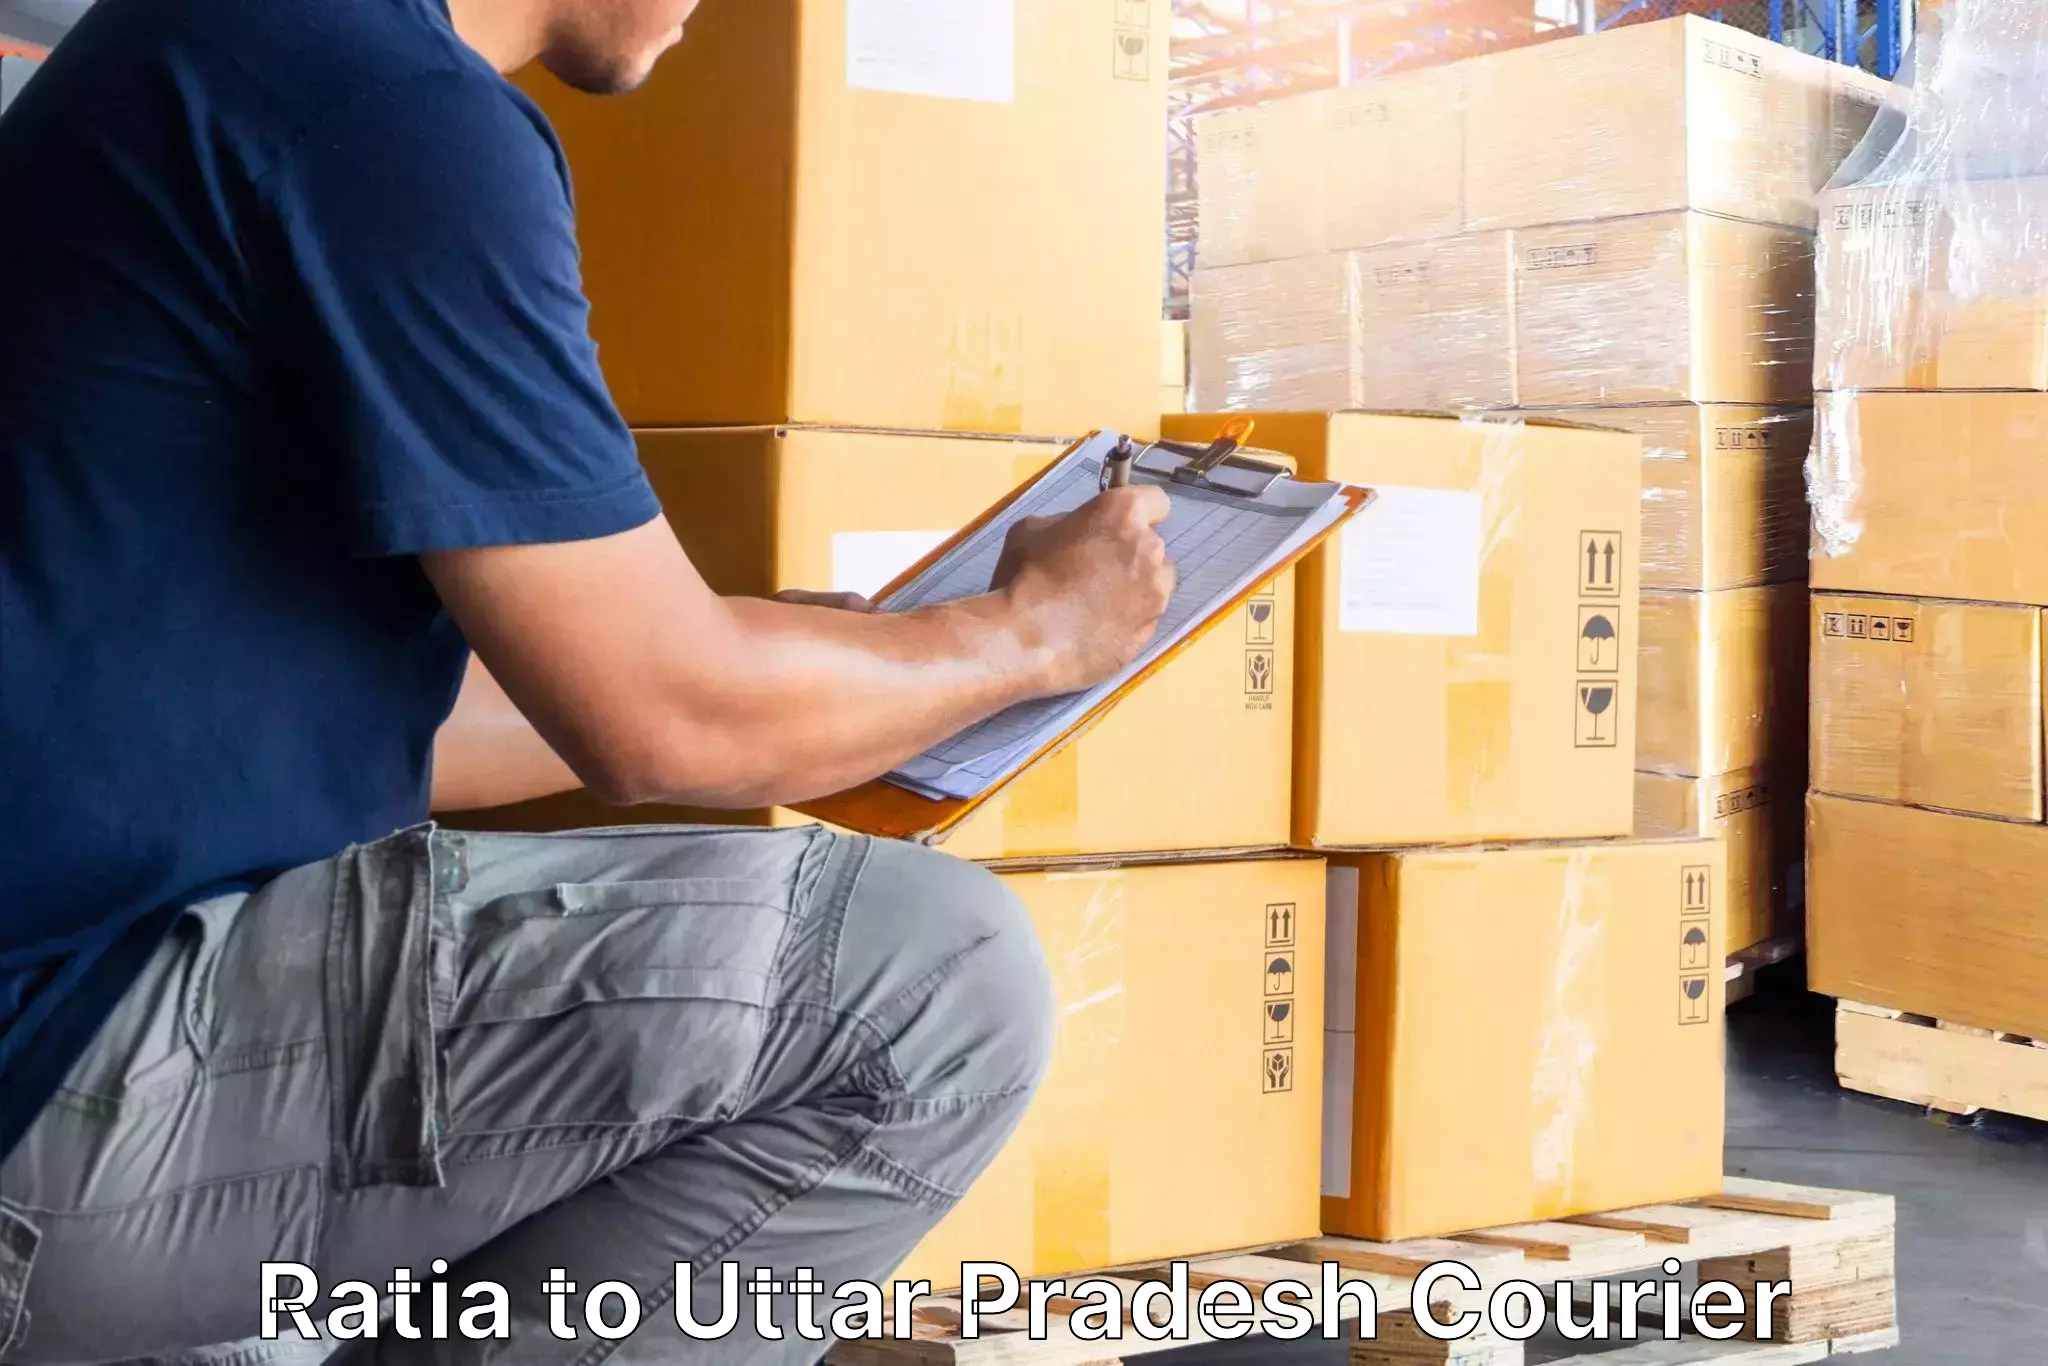 Home goods moving company Ratia to Uttar Pradesh